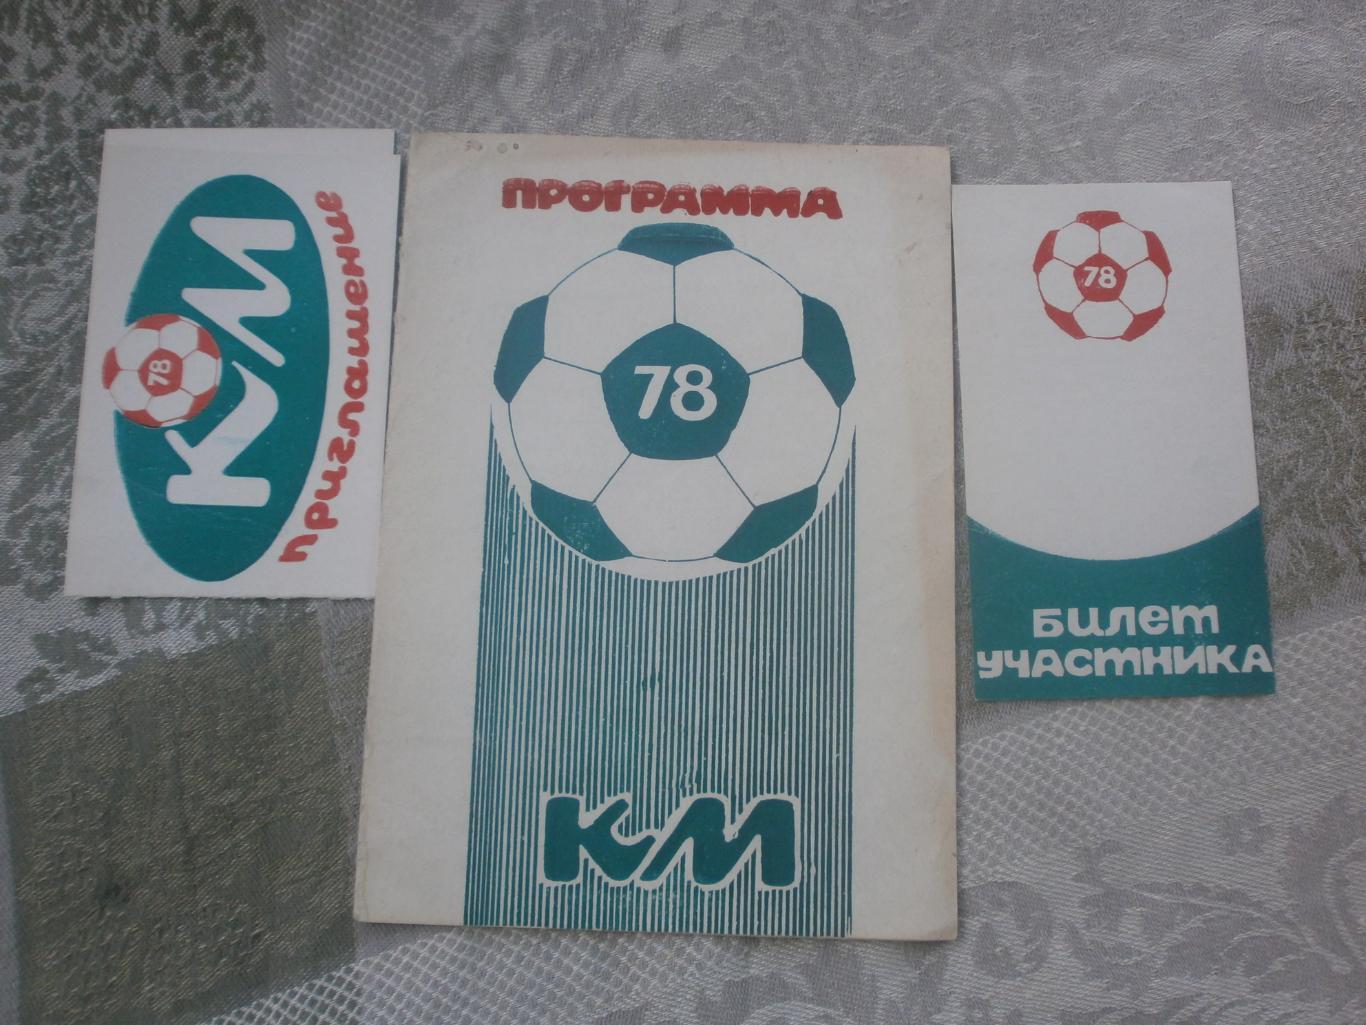 Кожаный мяч 1978г Белгород 16с. Билет участника, приглашение.